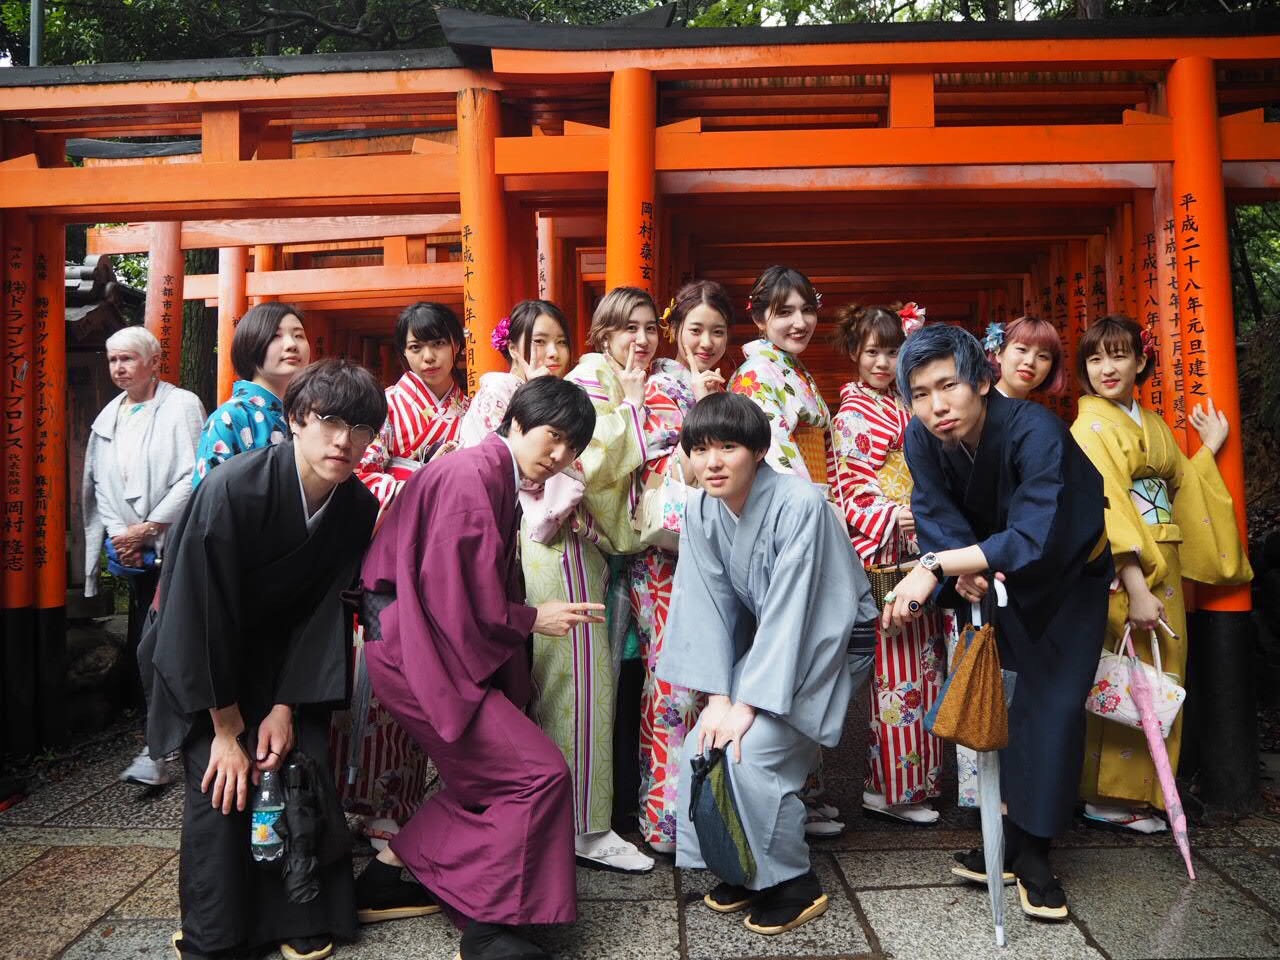 研修旅行で訪れた京都では、着物姿になって街を散策。「着つけも初めてだったので良い思い出になりました」